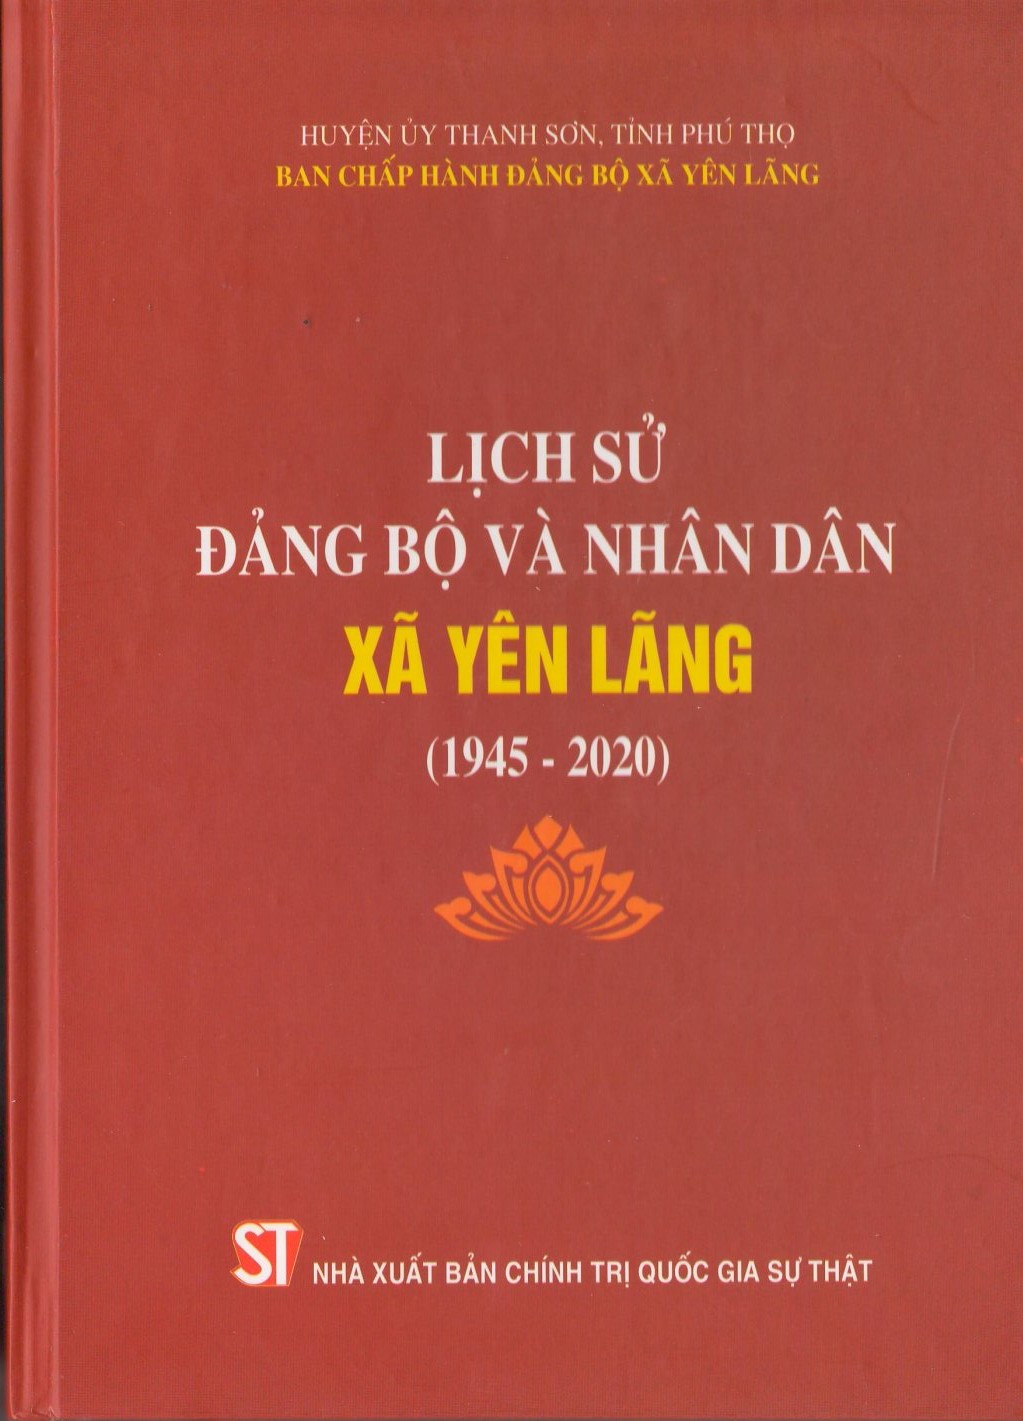 Lịch sử Đảng bộ và nhân dân xã Yên Lãng (1945 - 2020)